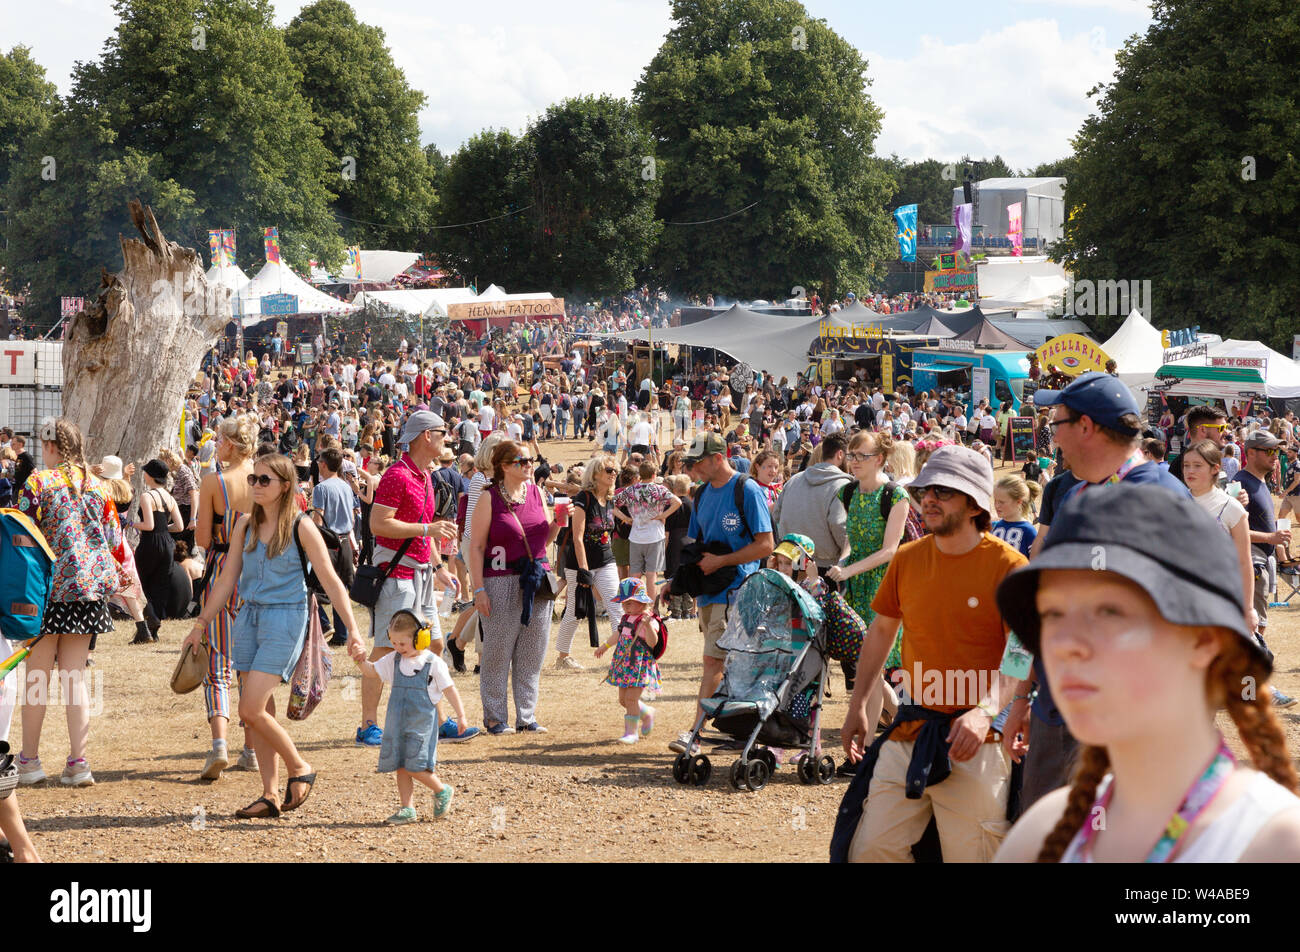 Festival Crowd UK; Latitude Festival Suffolk UK - scène surpeuplée avec des foules de personnes au festival de musique, Suffolk Latitude UK 2019 Banque D'Images